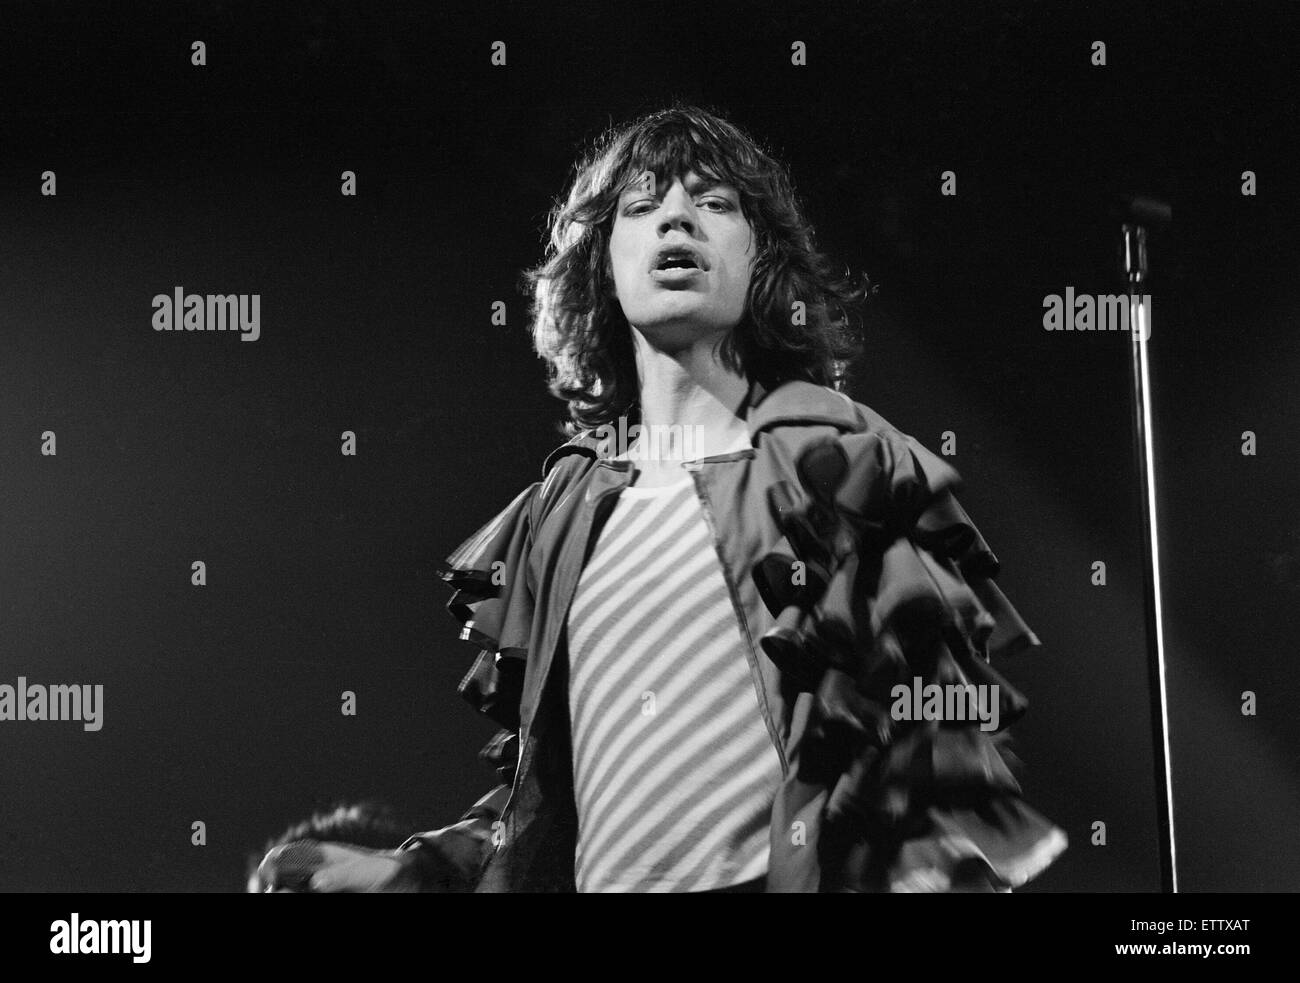 Les Rolling Stones, Tour de l'Europe '76, effectuer sur la scène du nouveau hall de Bingley, Stafford, Staffordshire, West Midlands, Royaume-Uni, 17 mai 1976. Mick Jagger Banque D'Images